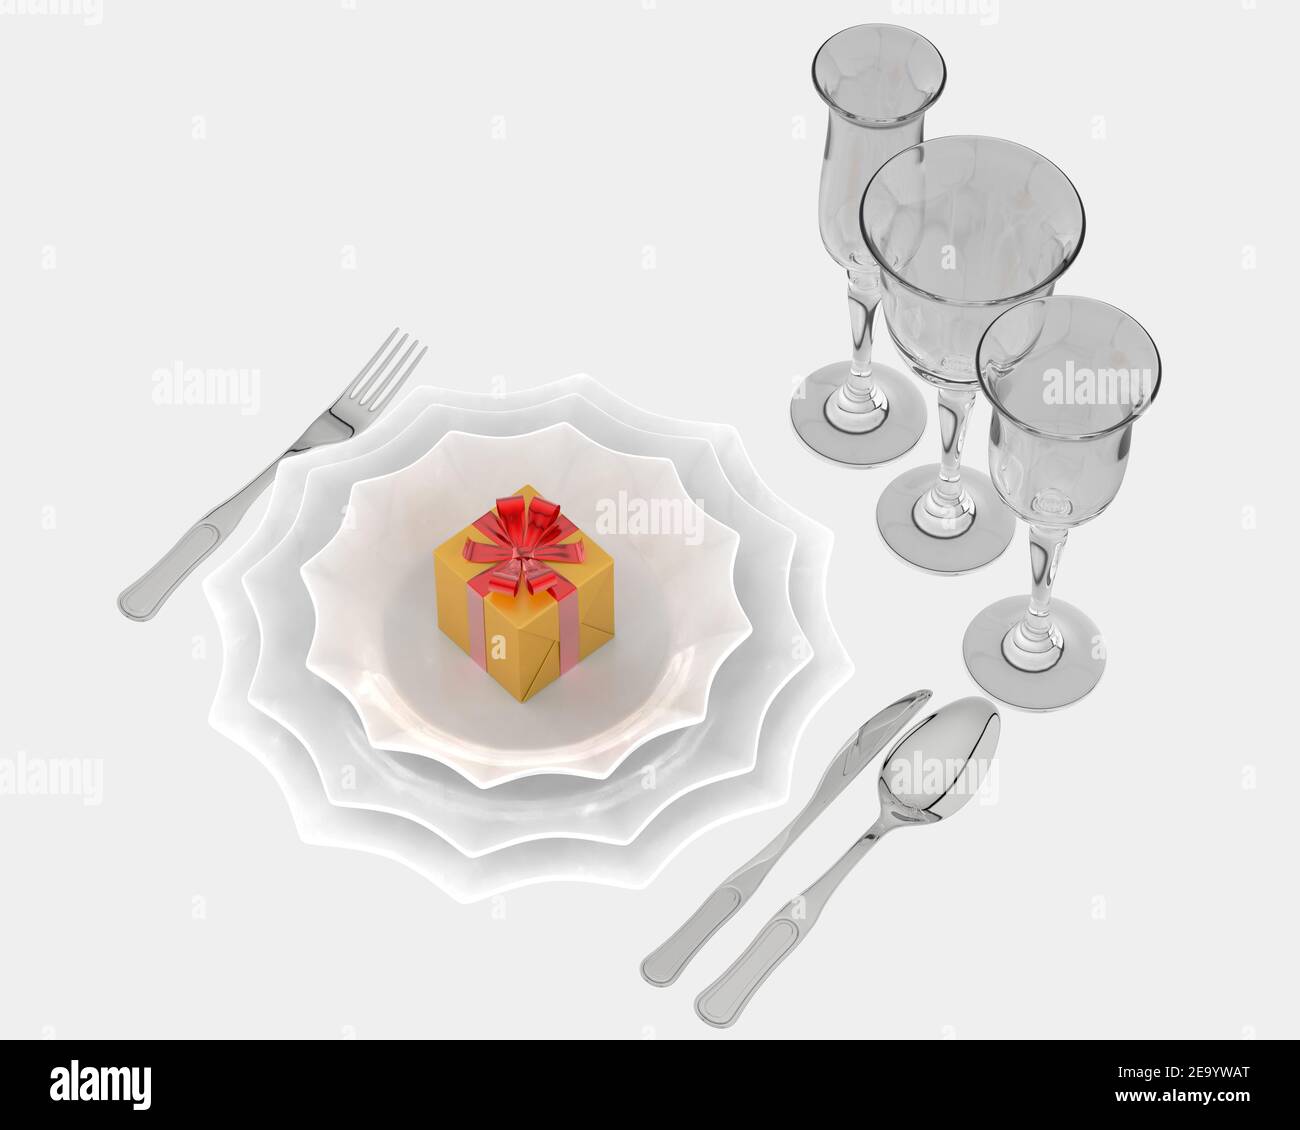 Christmas dinner plate. 3d rendering - illustration Stock Photo